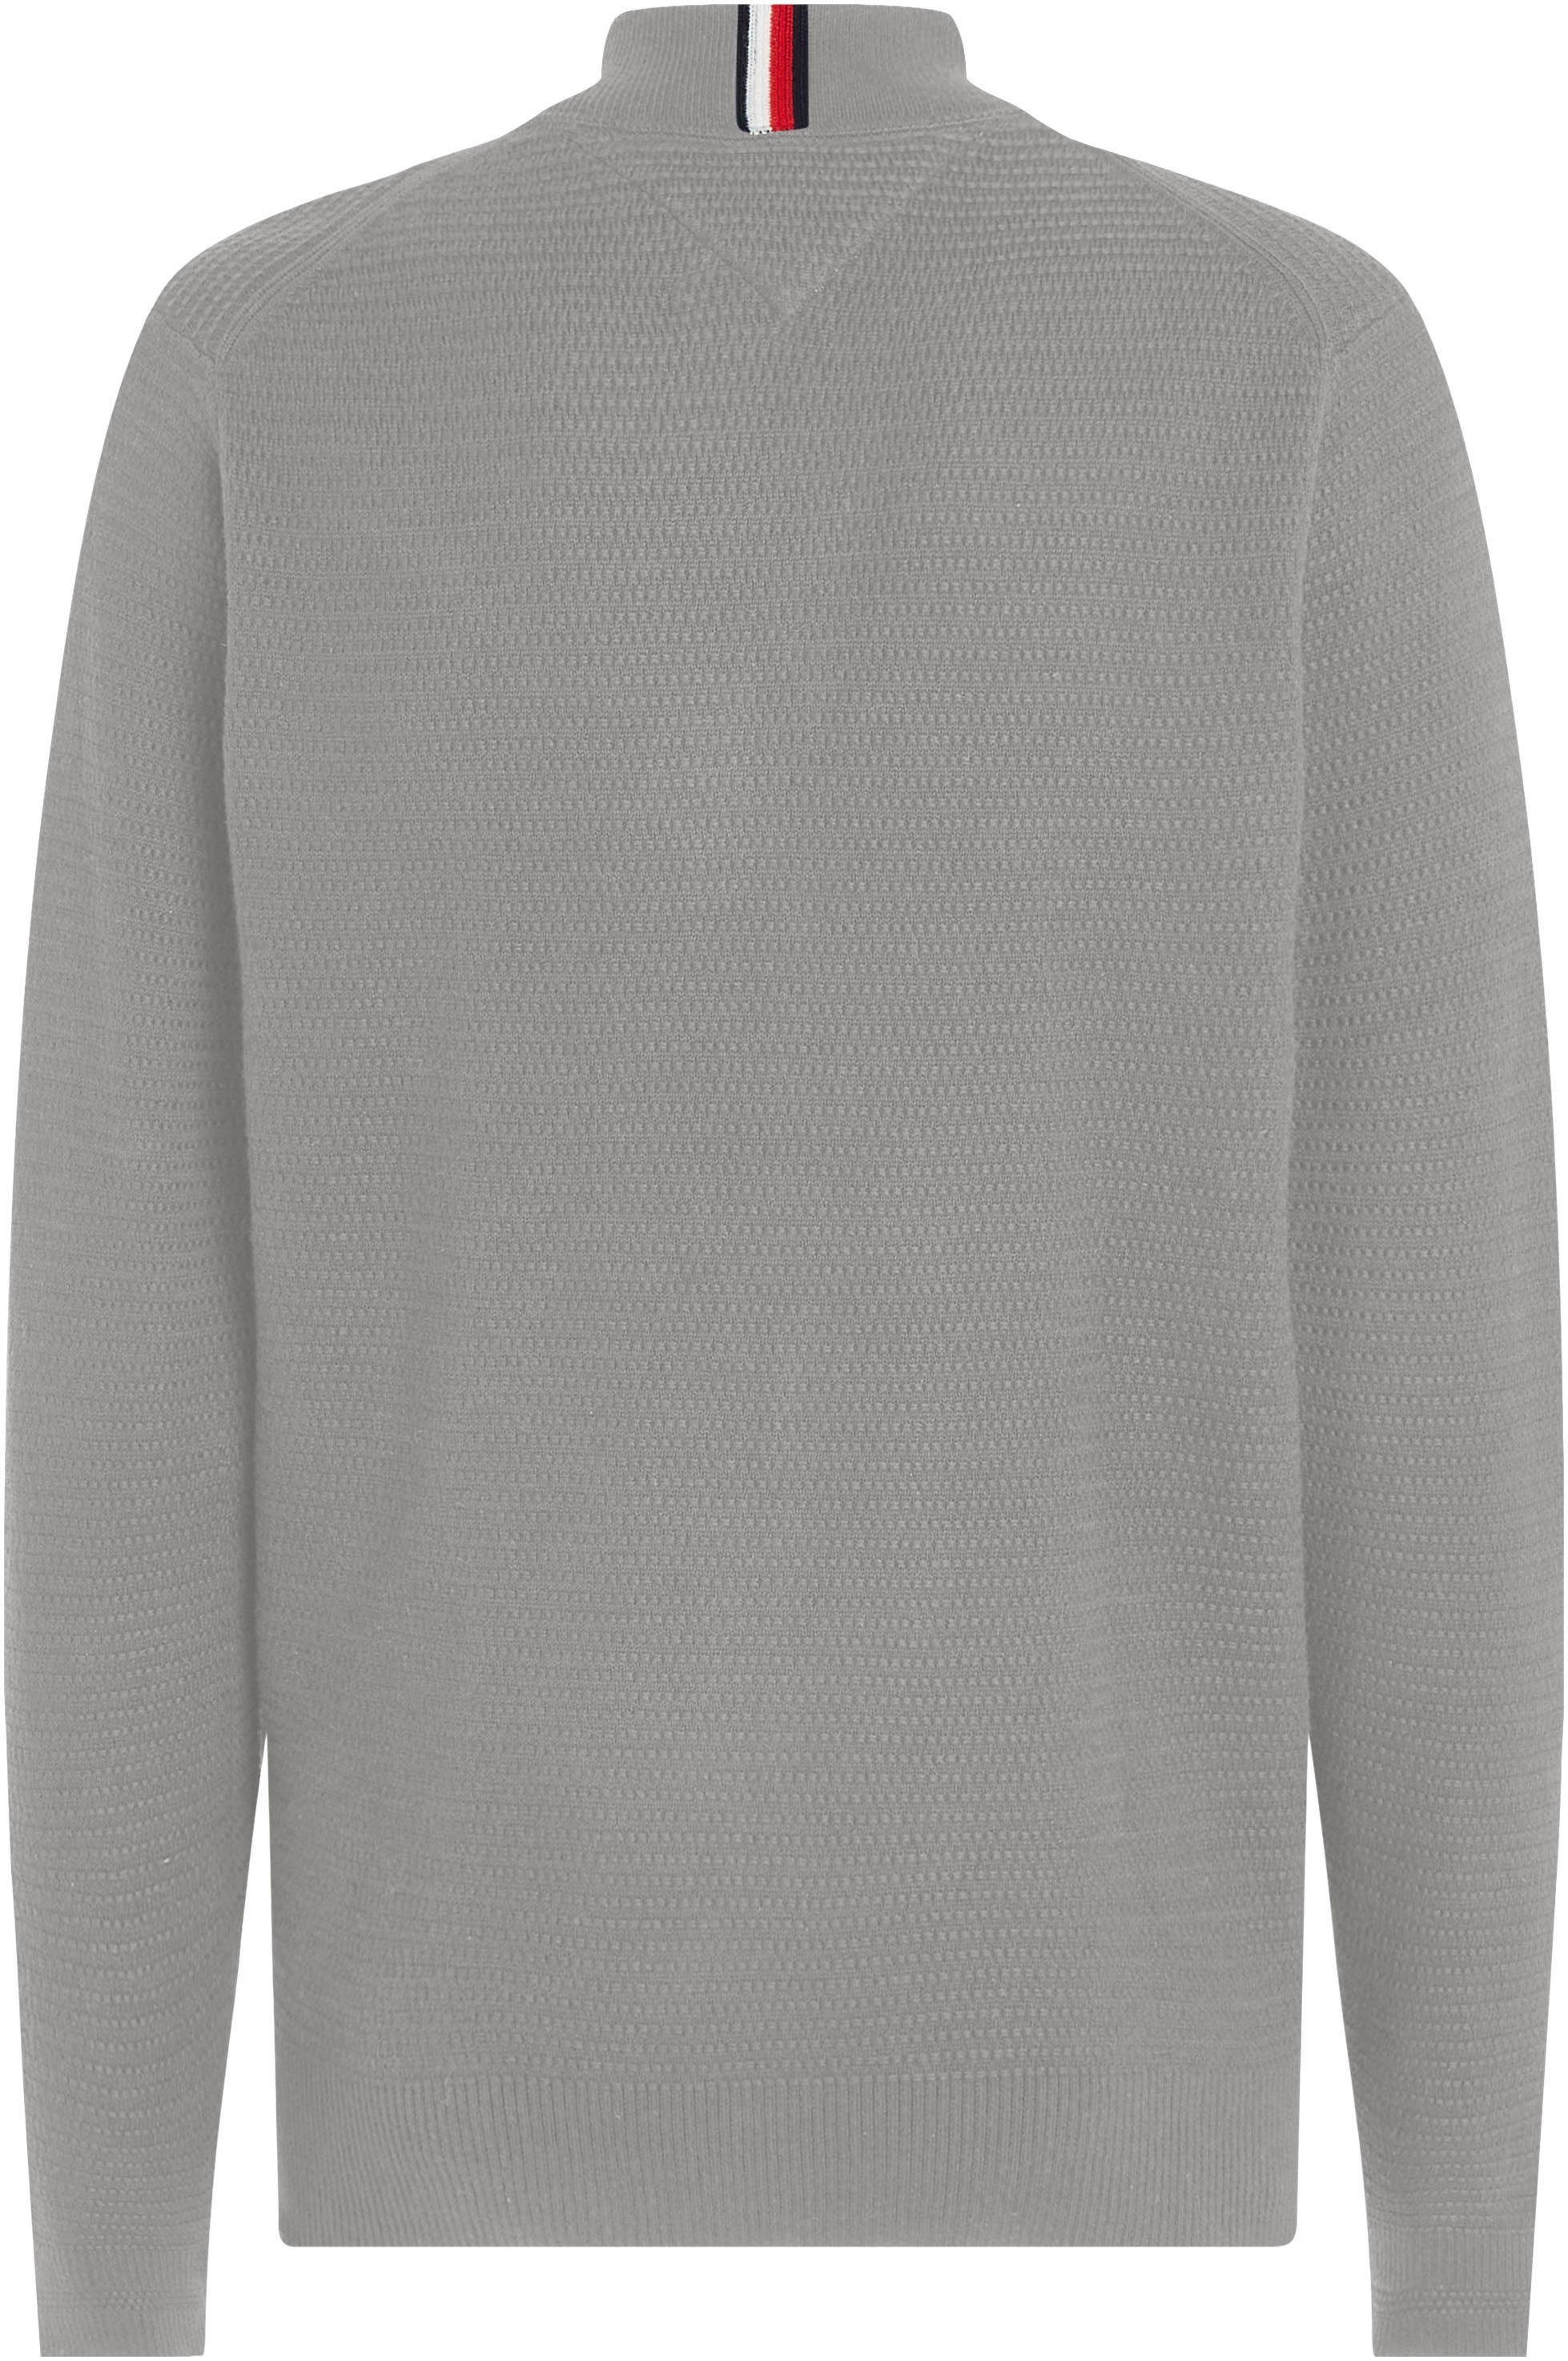 Tommy Hilfiger Sweatshirt INTERLACED THROUGH Grey in strukturierter Medium Heather ZIP Optik BASEBALL